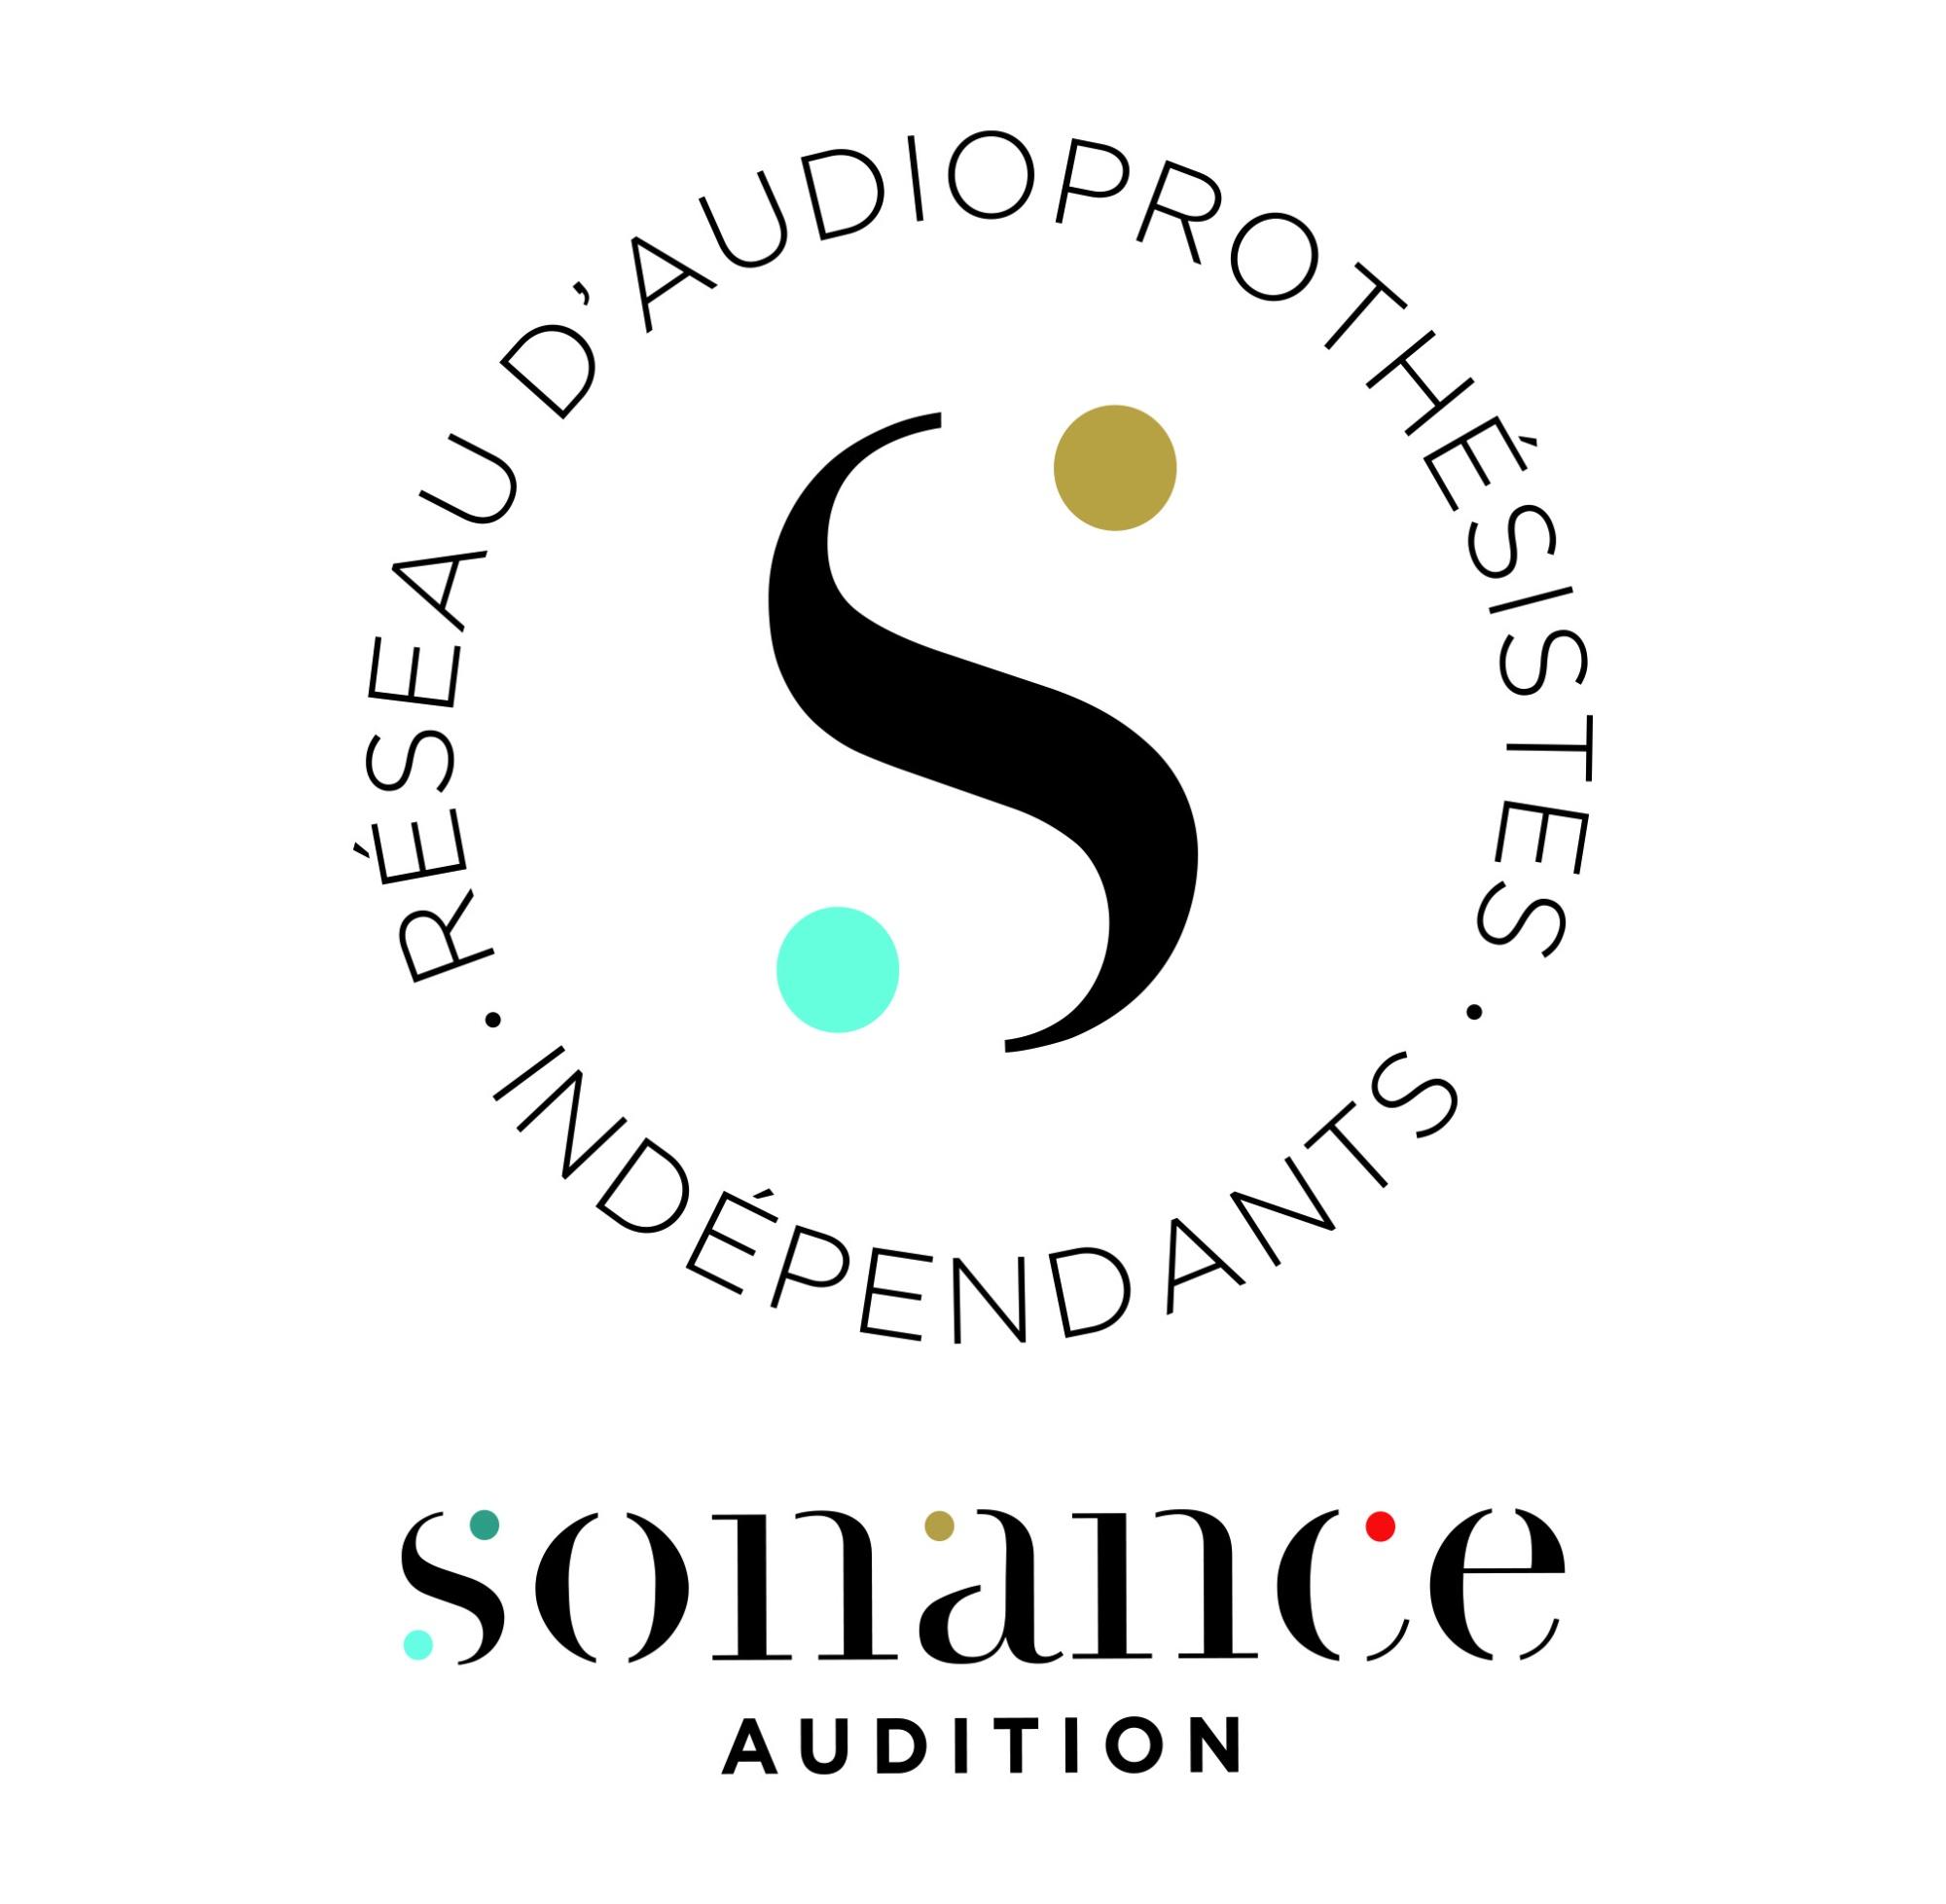 Sonance Audition Bordeaux